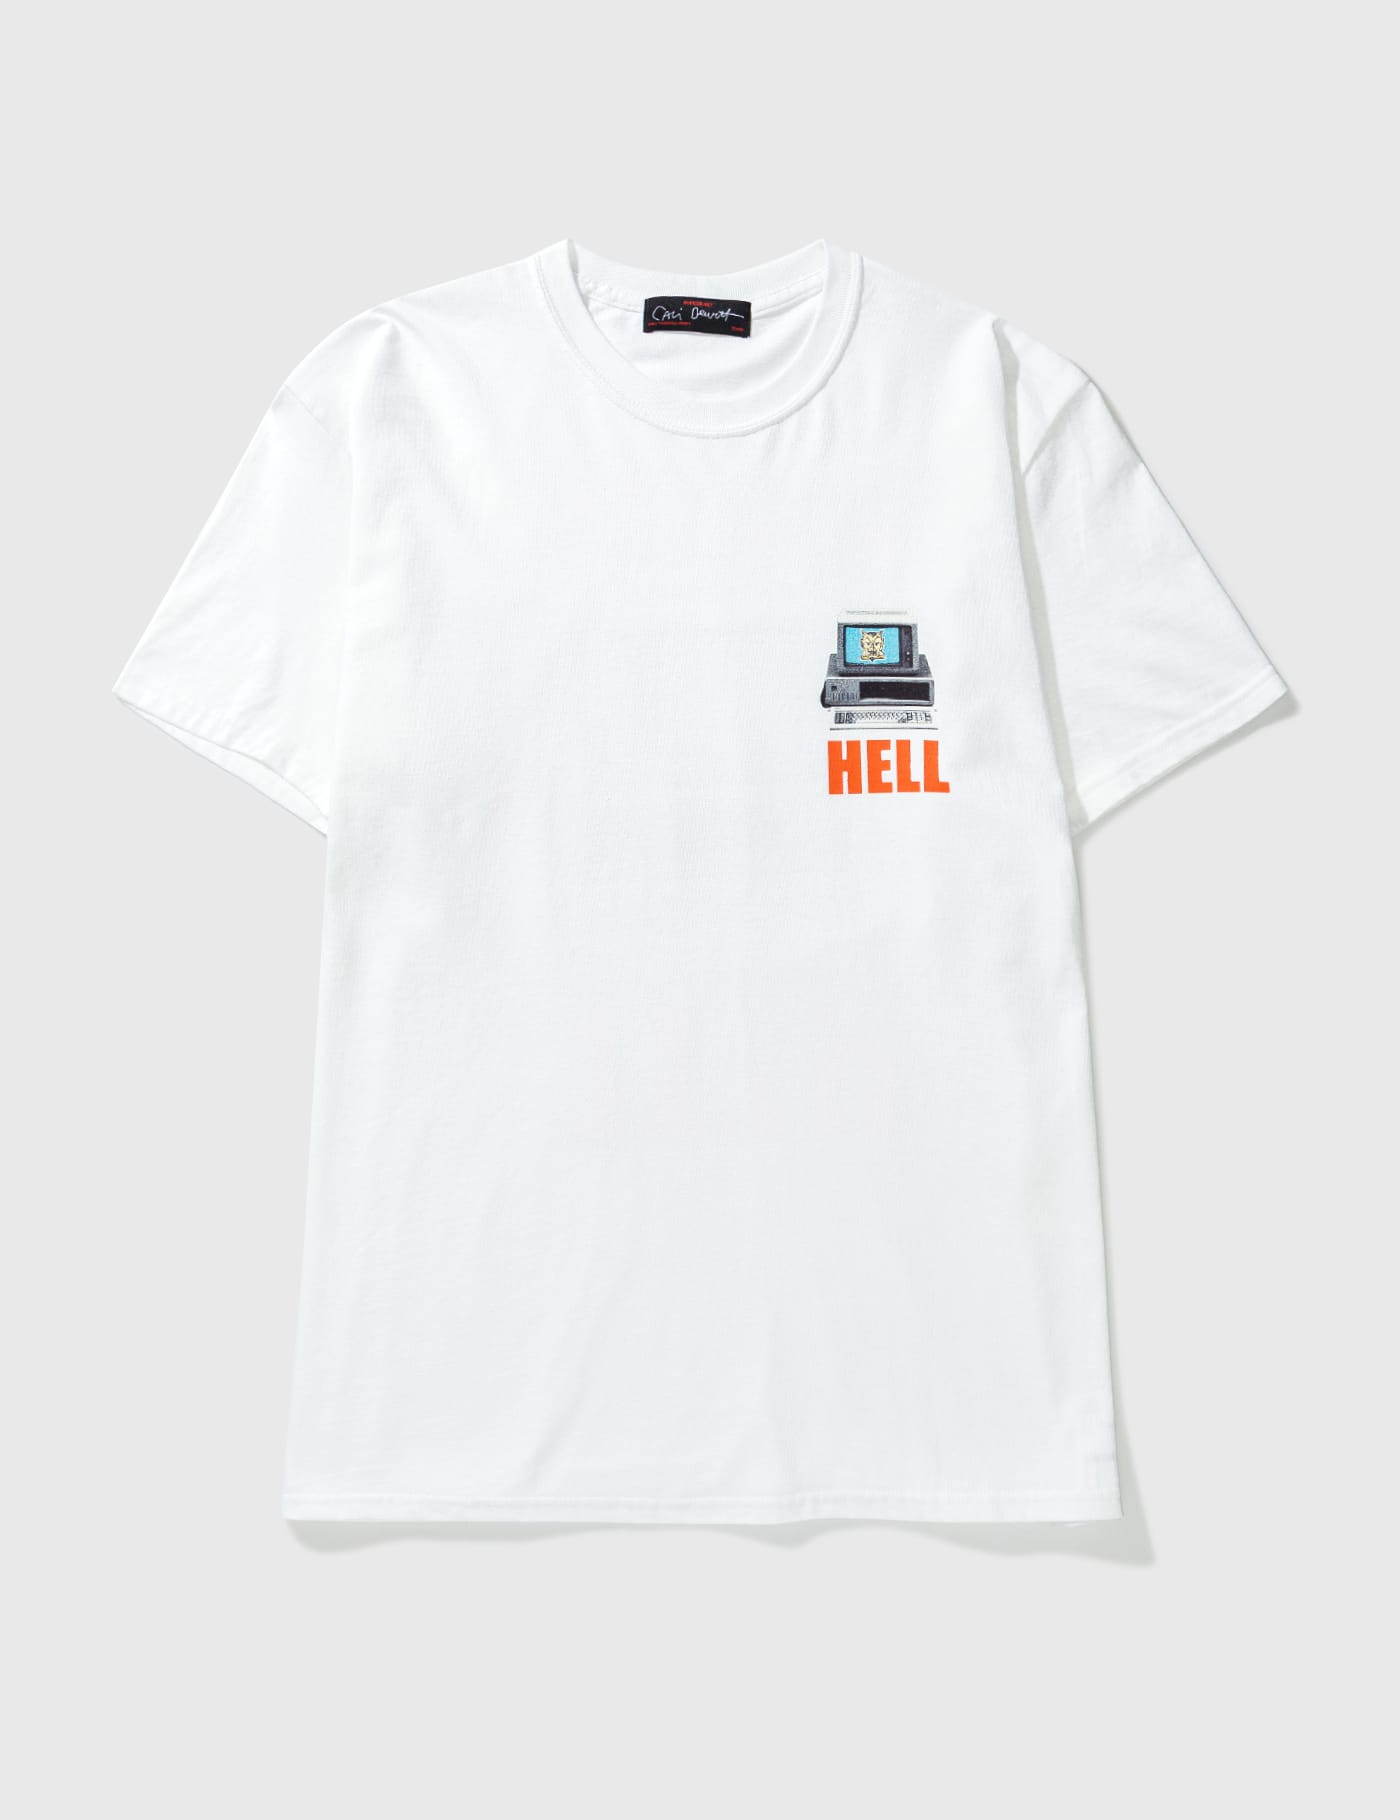 Cali Thornhill Dewitt x Hypebeast T-Shirt